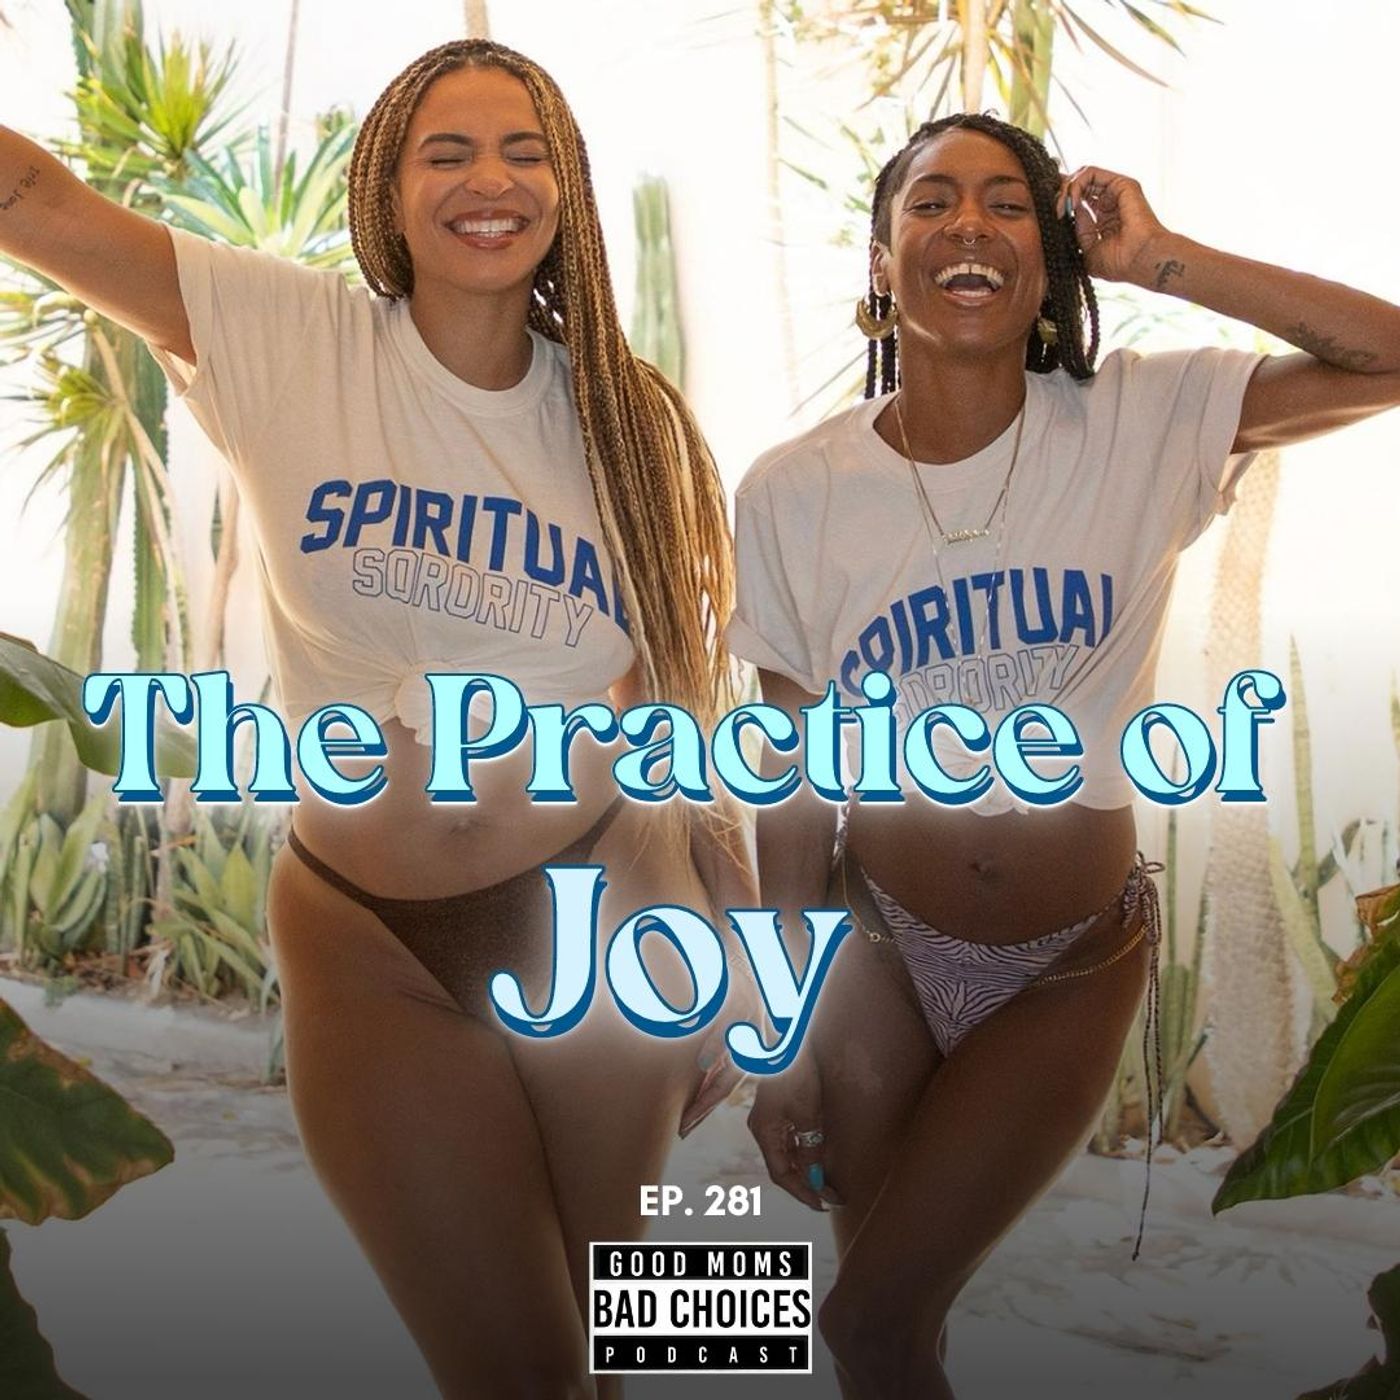 The Practice of Joy